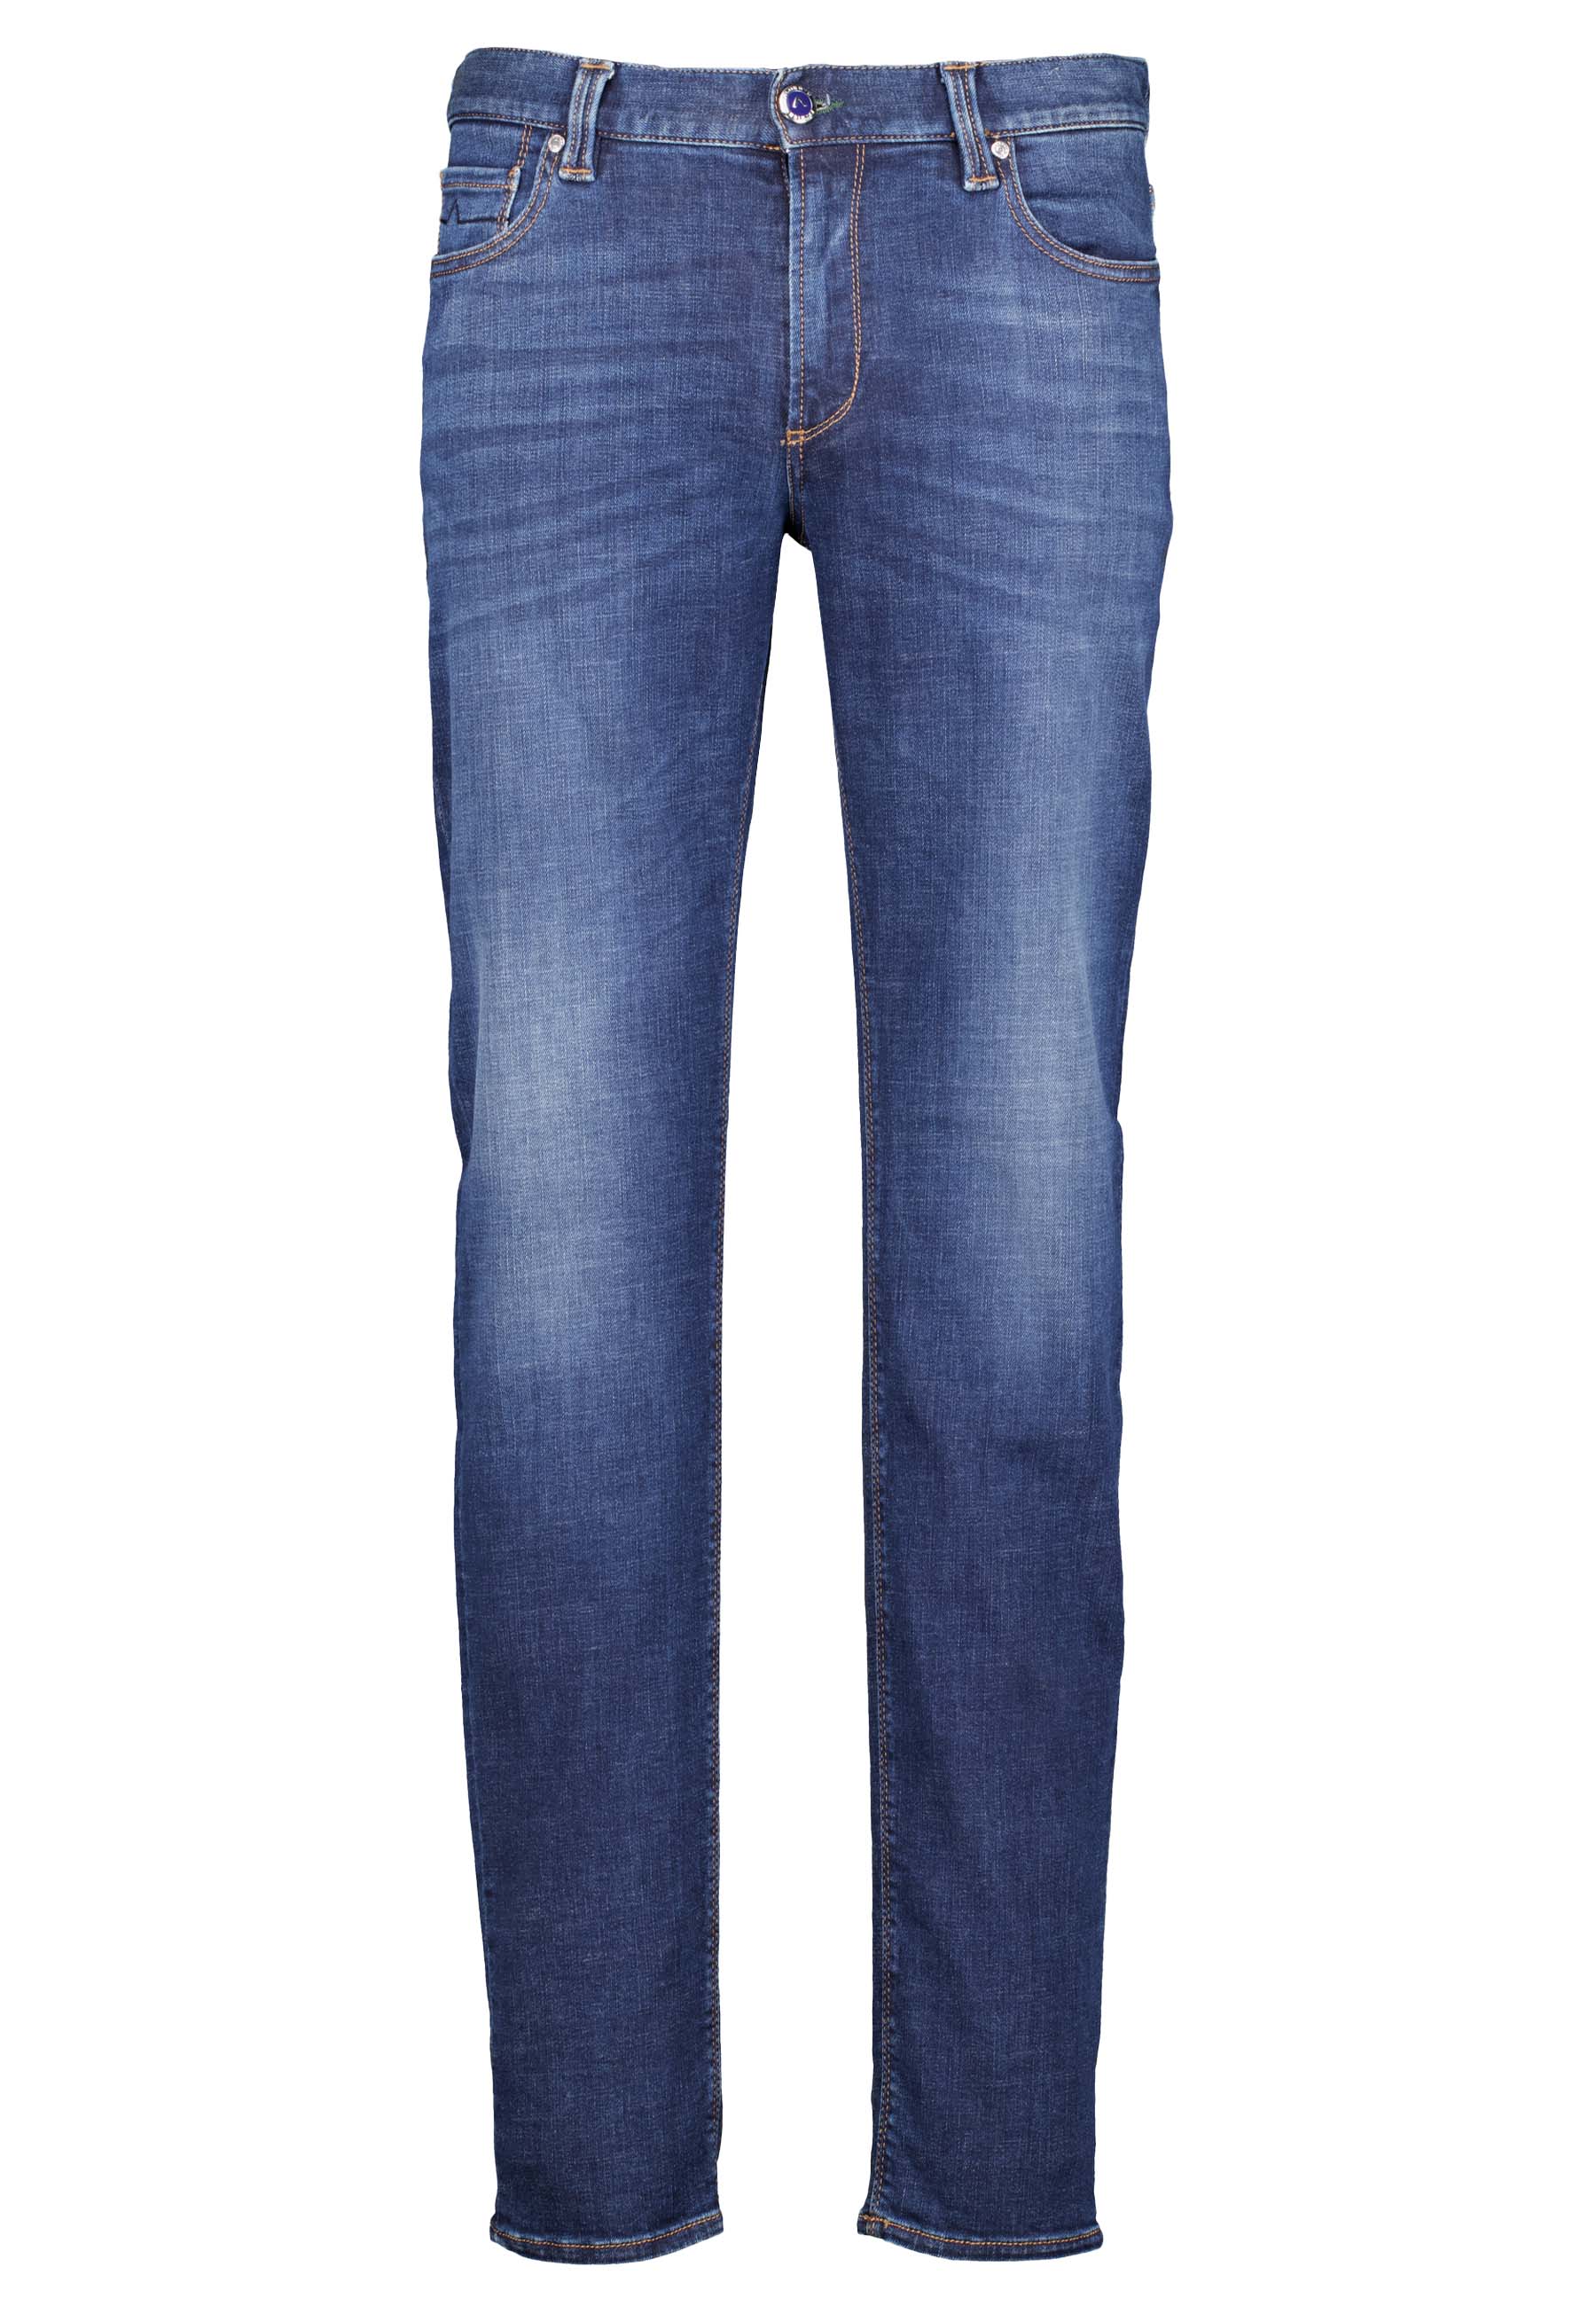 Alberto jeans blauw Heren maat 31/34